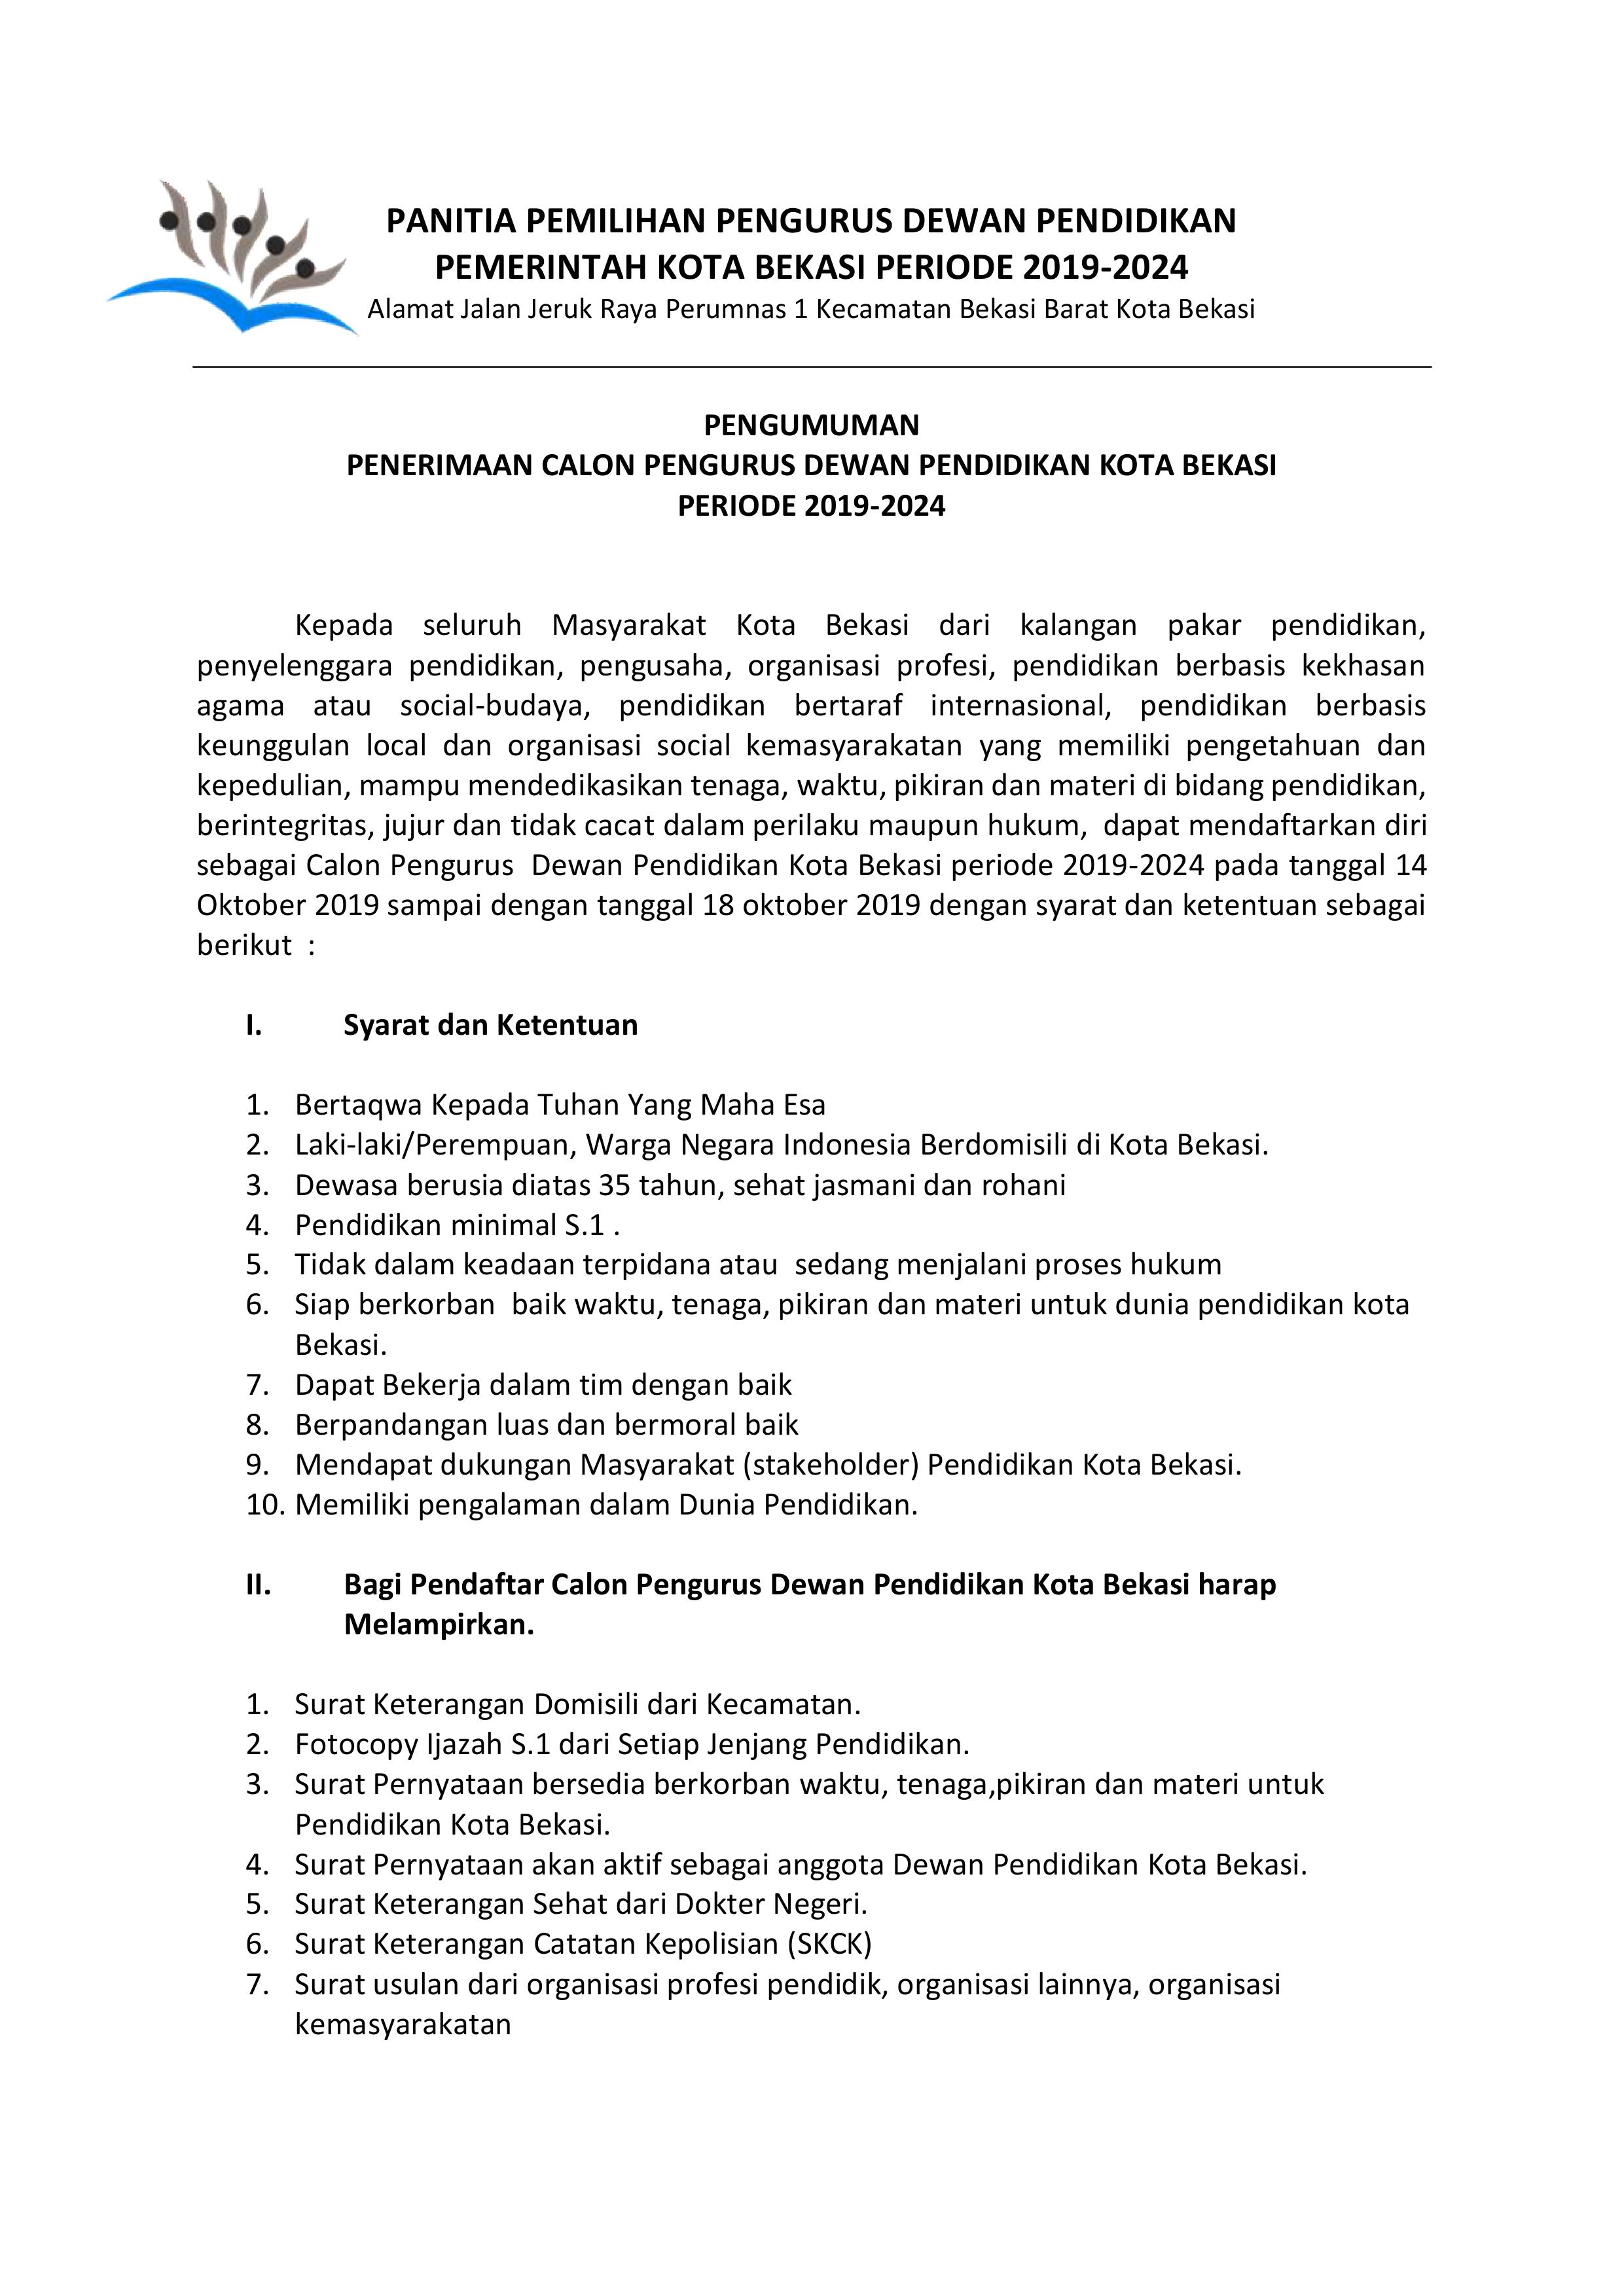 Penerimaan Calon Pengurus Dewan Pendidikan Kota Bekasi Periode 2019-2024